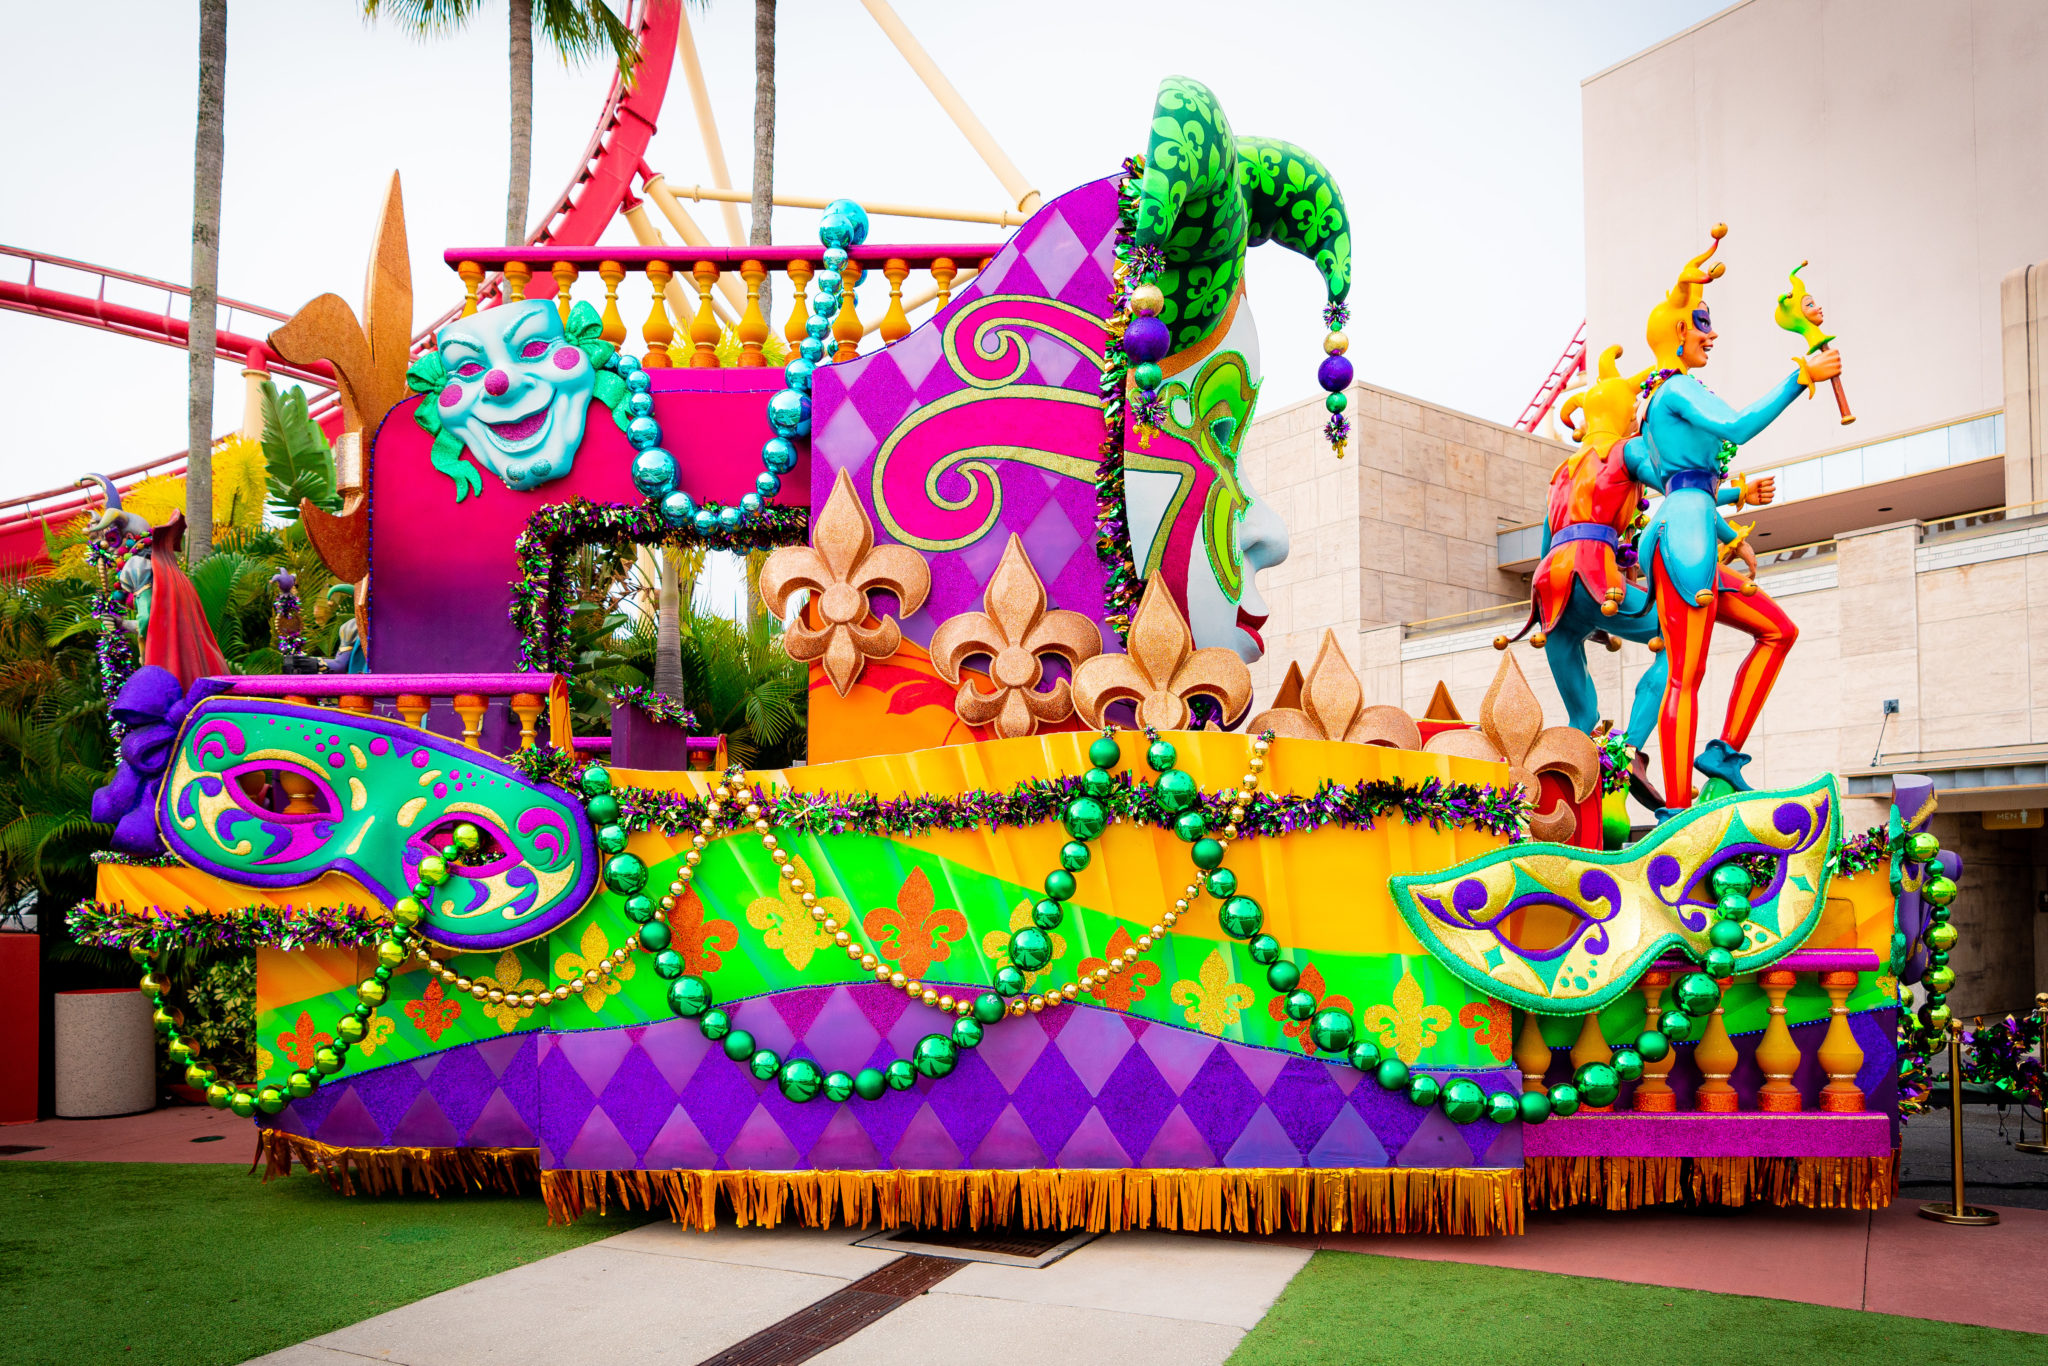 Insider's guide to Mardi Gras 2021's parade Orlando Informer